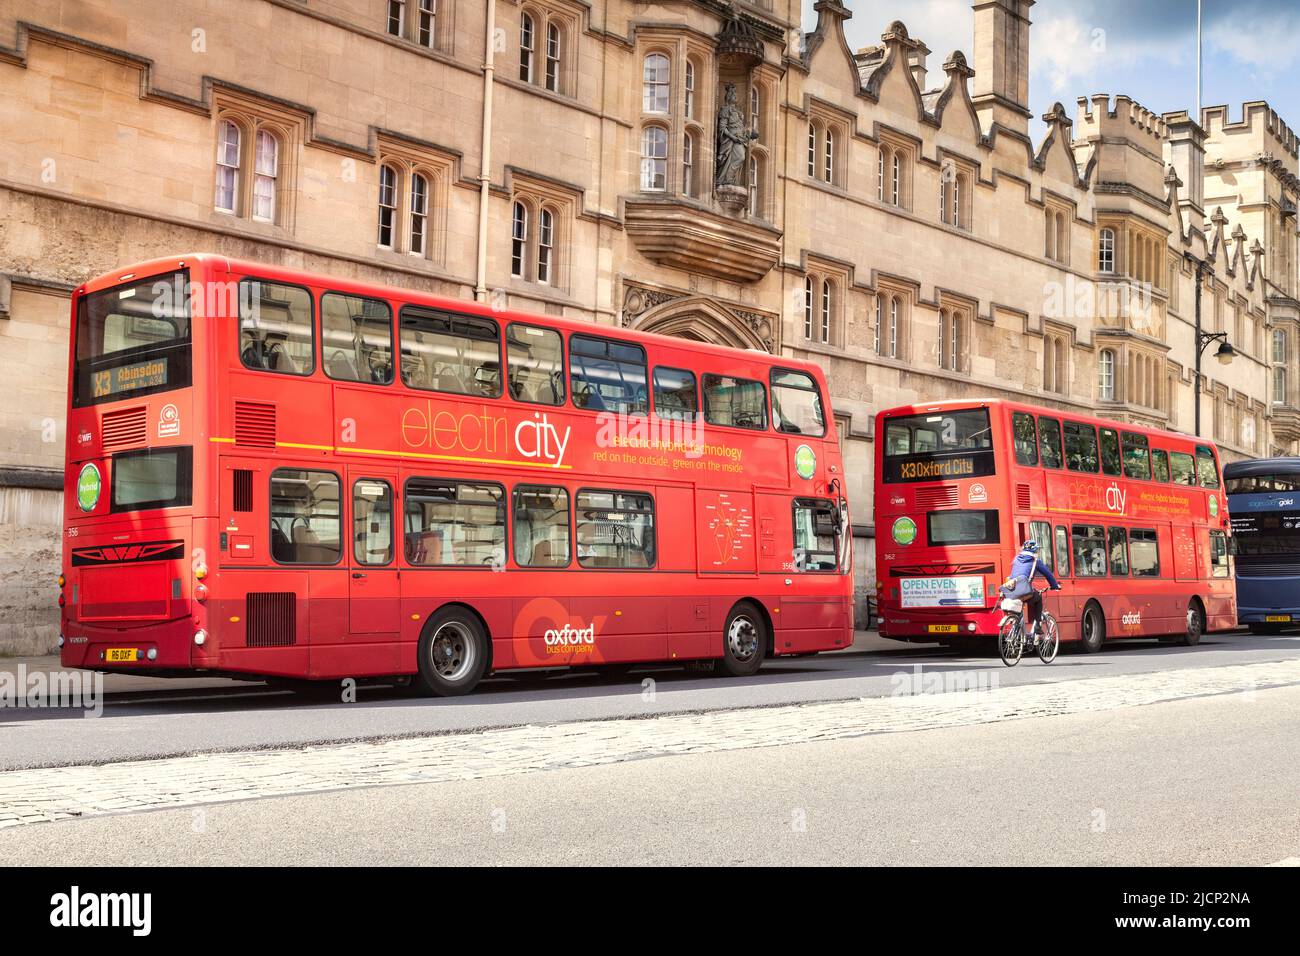 6 juin 2019: Oxford, Royaume-Uni - bus hybrides électriques à impériale dans la rue High, avec un cycliste passant. Banque D'Images